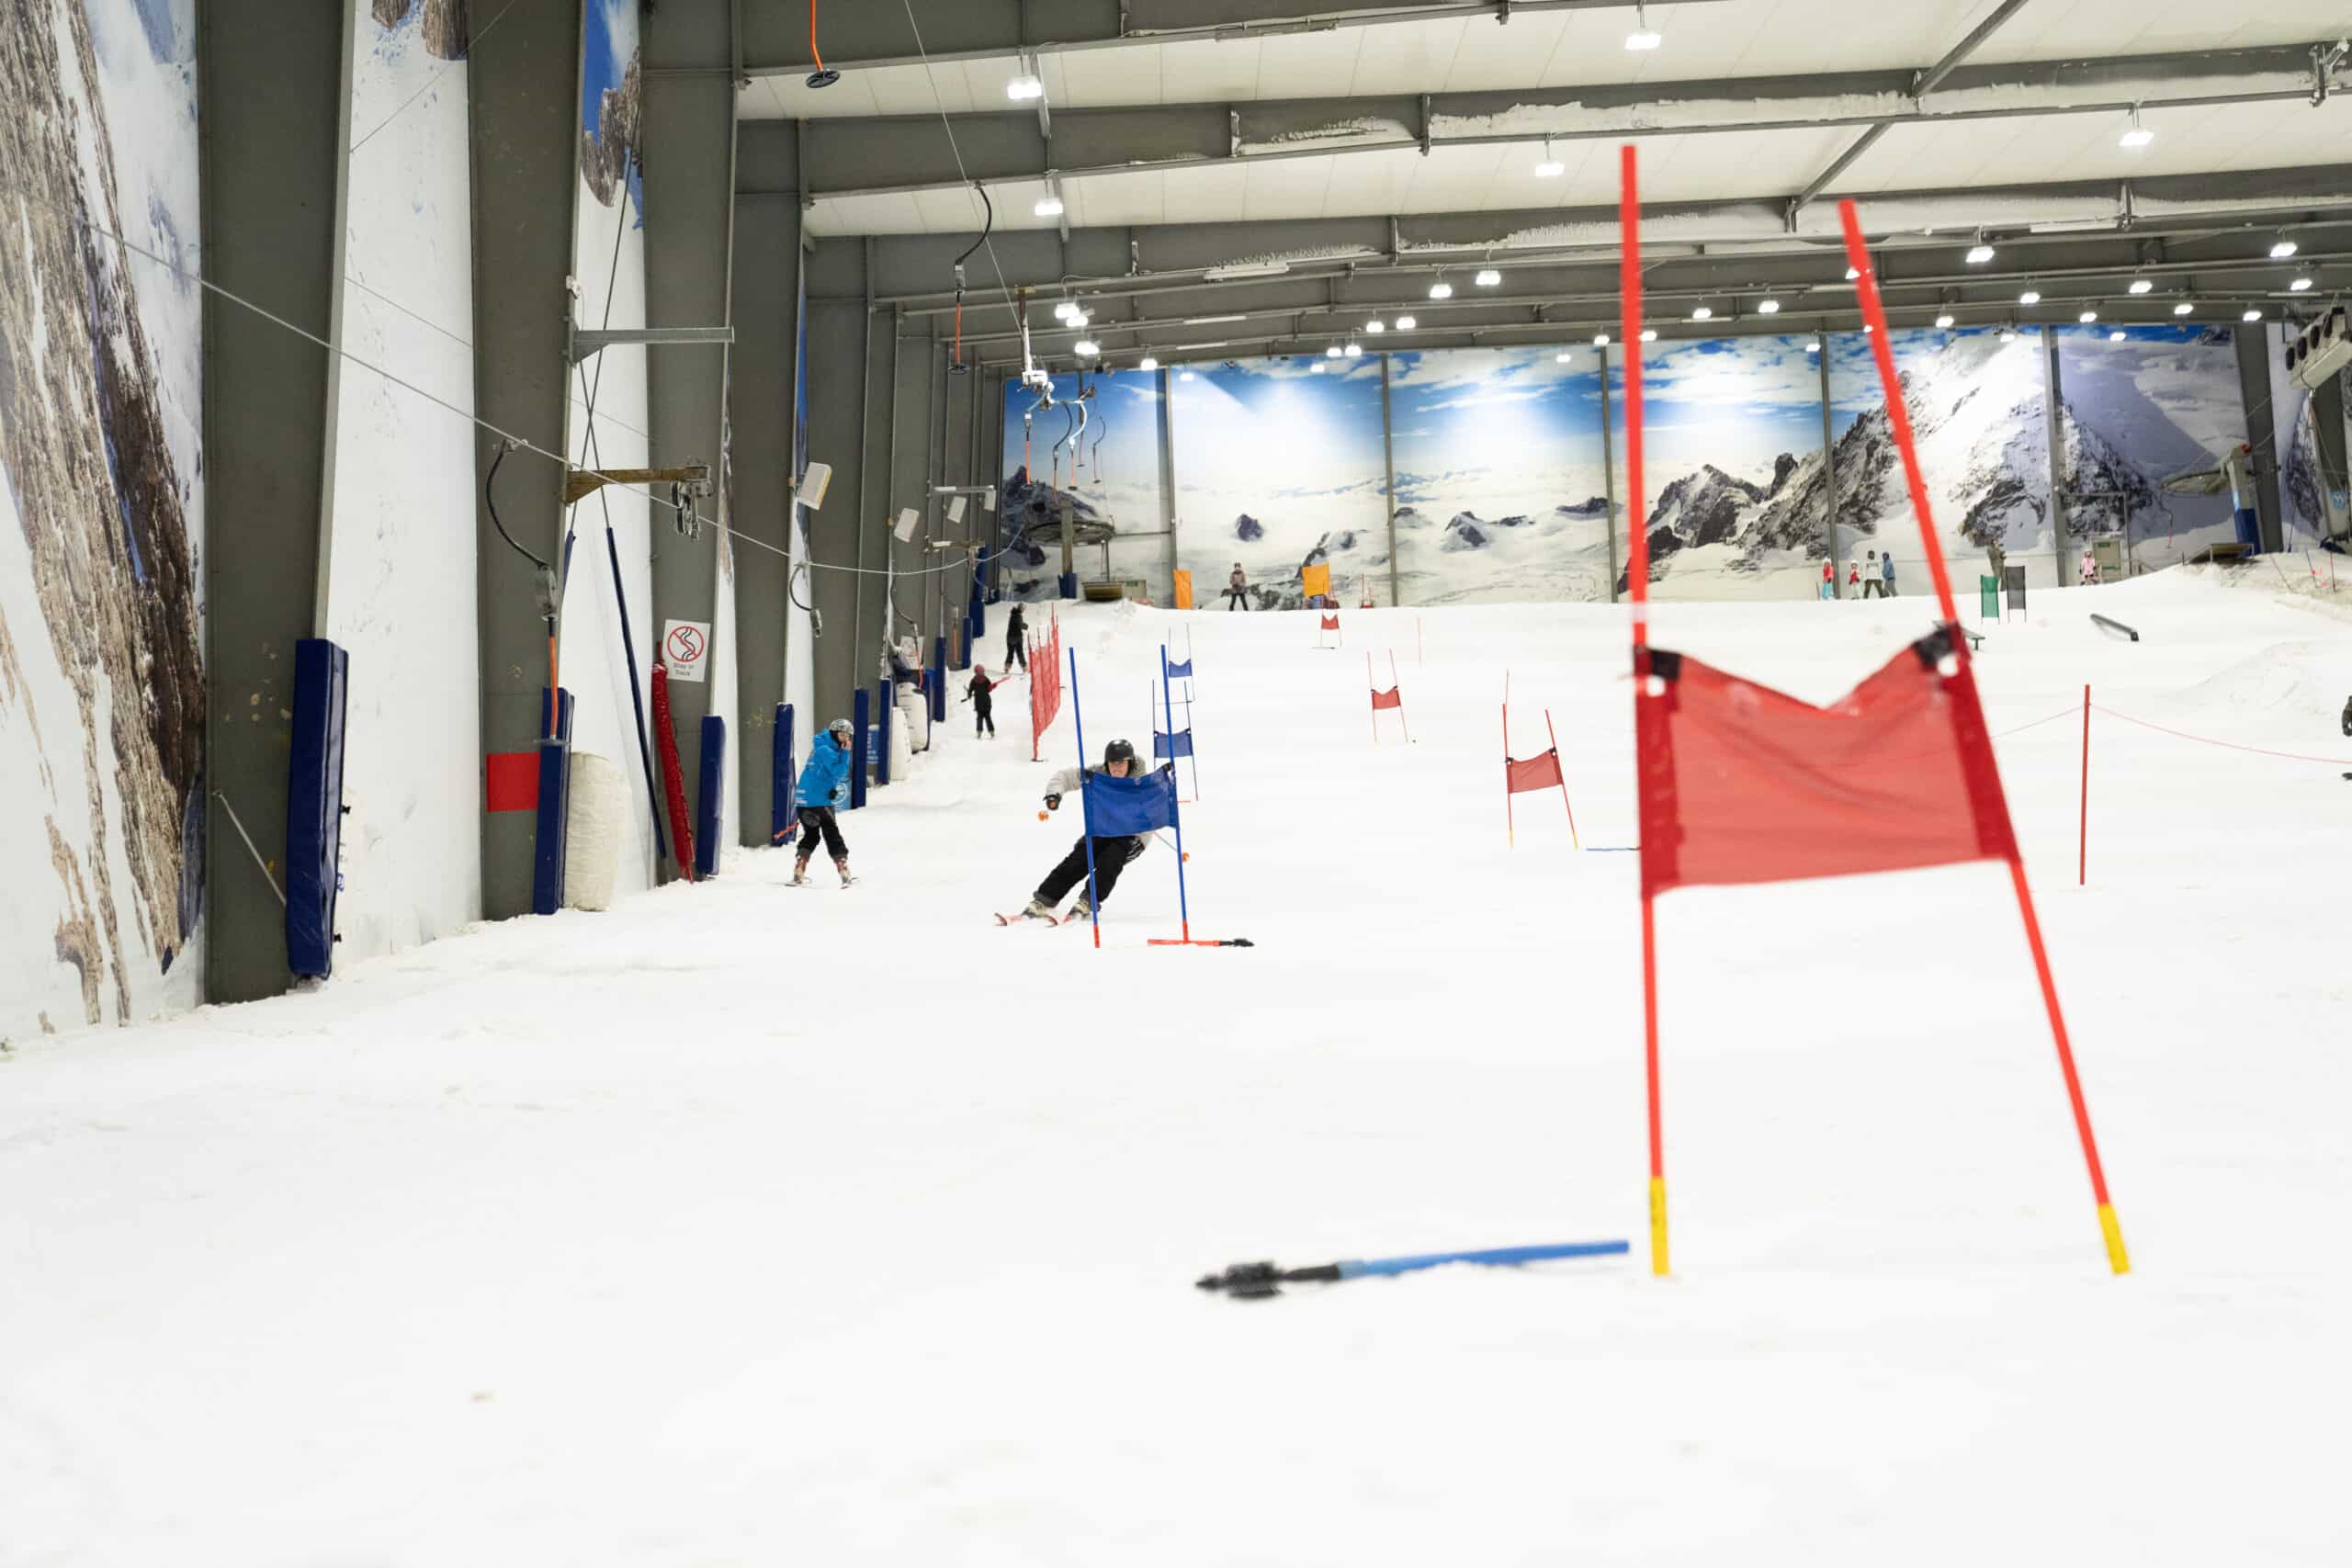 Race Skiing at Snowplanet indoor ski resort in Silverdale